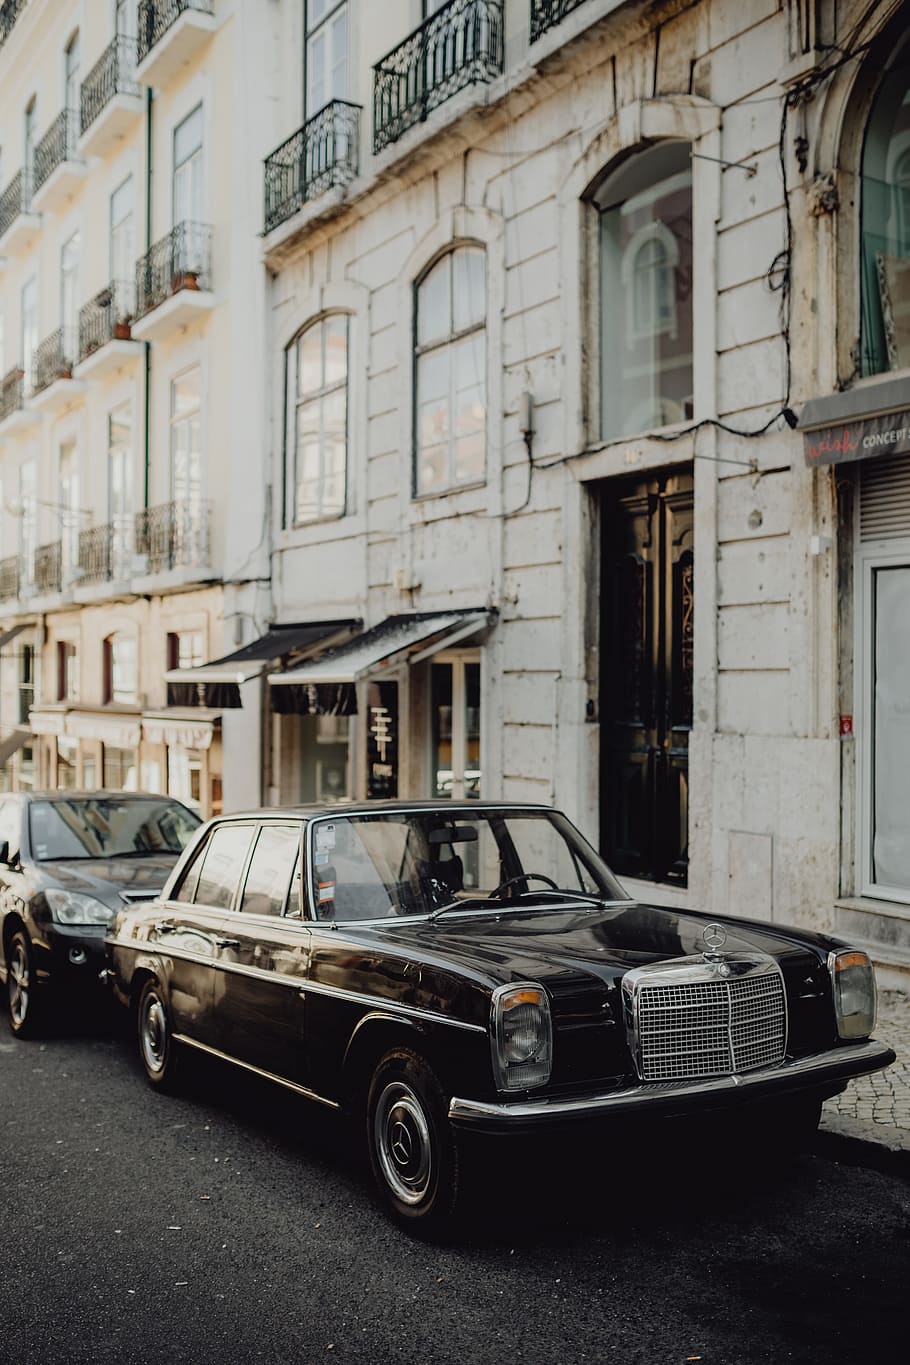 старый, Mercedes Benz, На стоянке, улица, Лиссабон, Португалия, марочный, автомобиль, черная машина, Черный